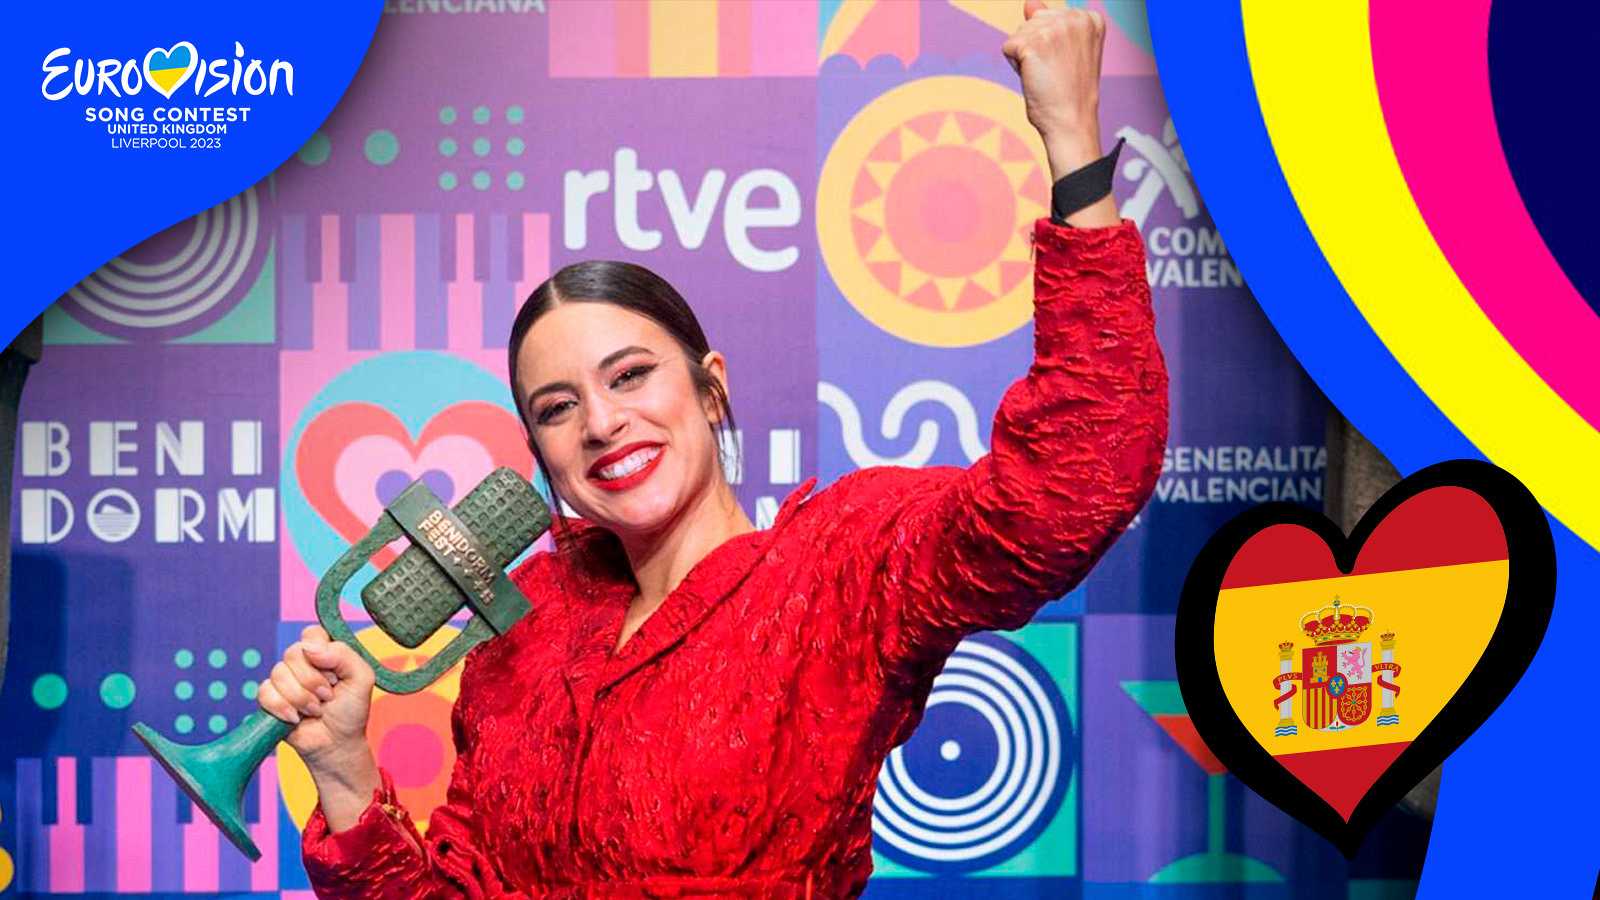 Blanca Paloma Eurovision